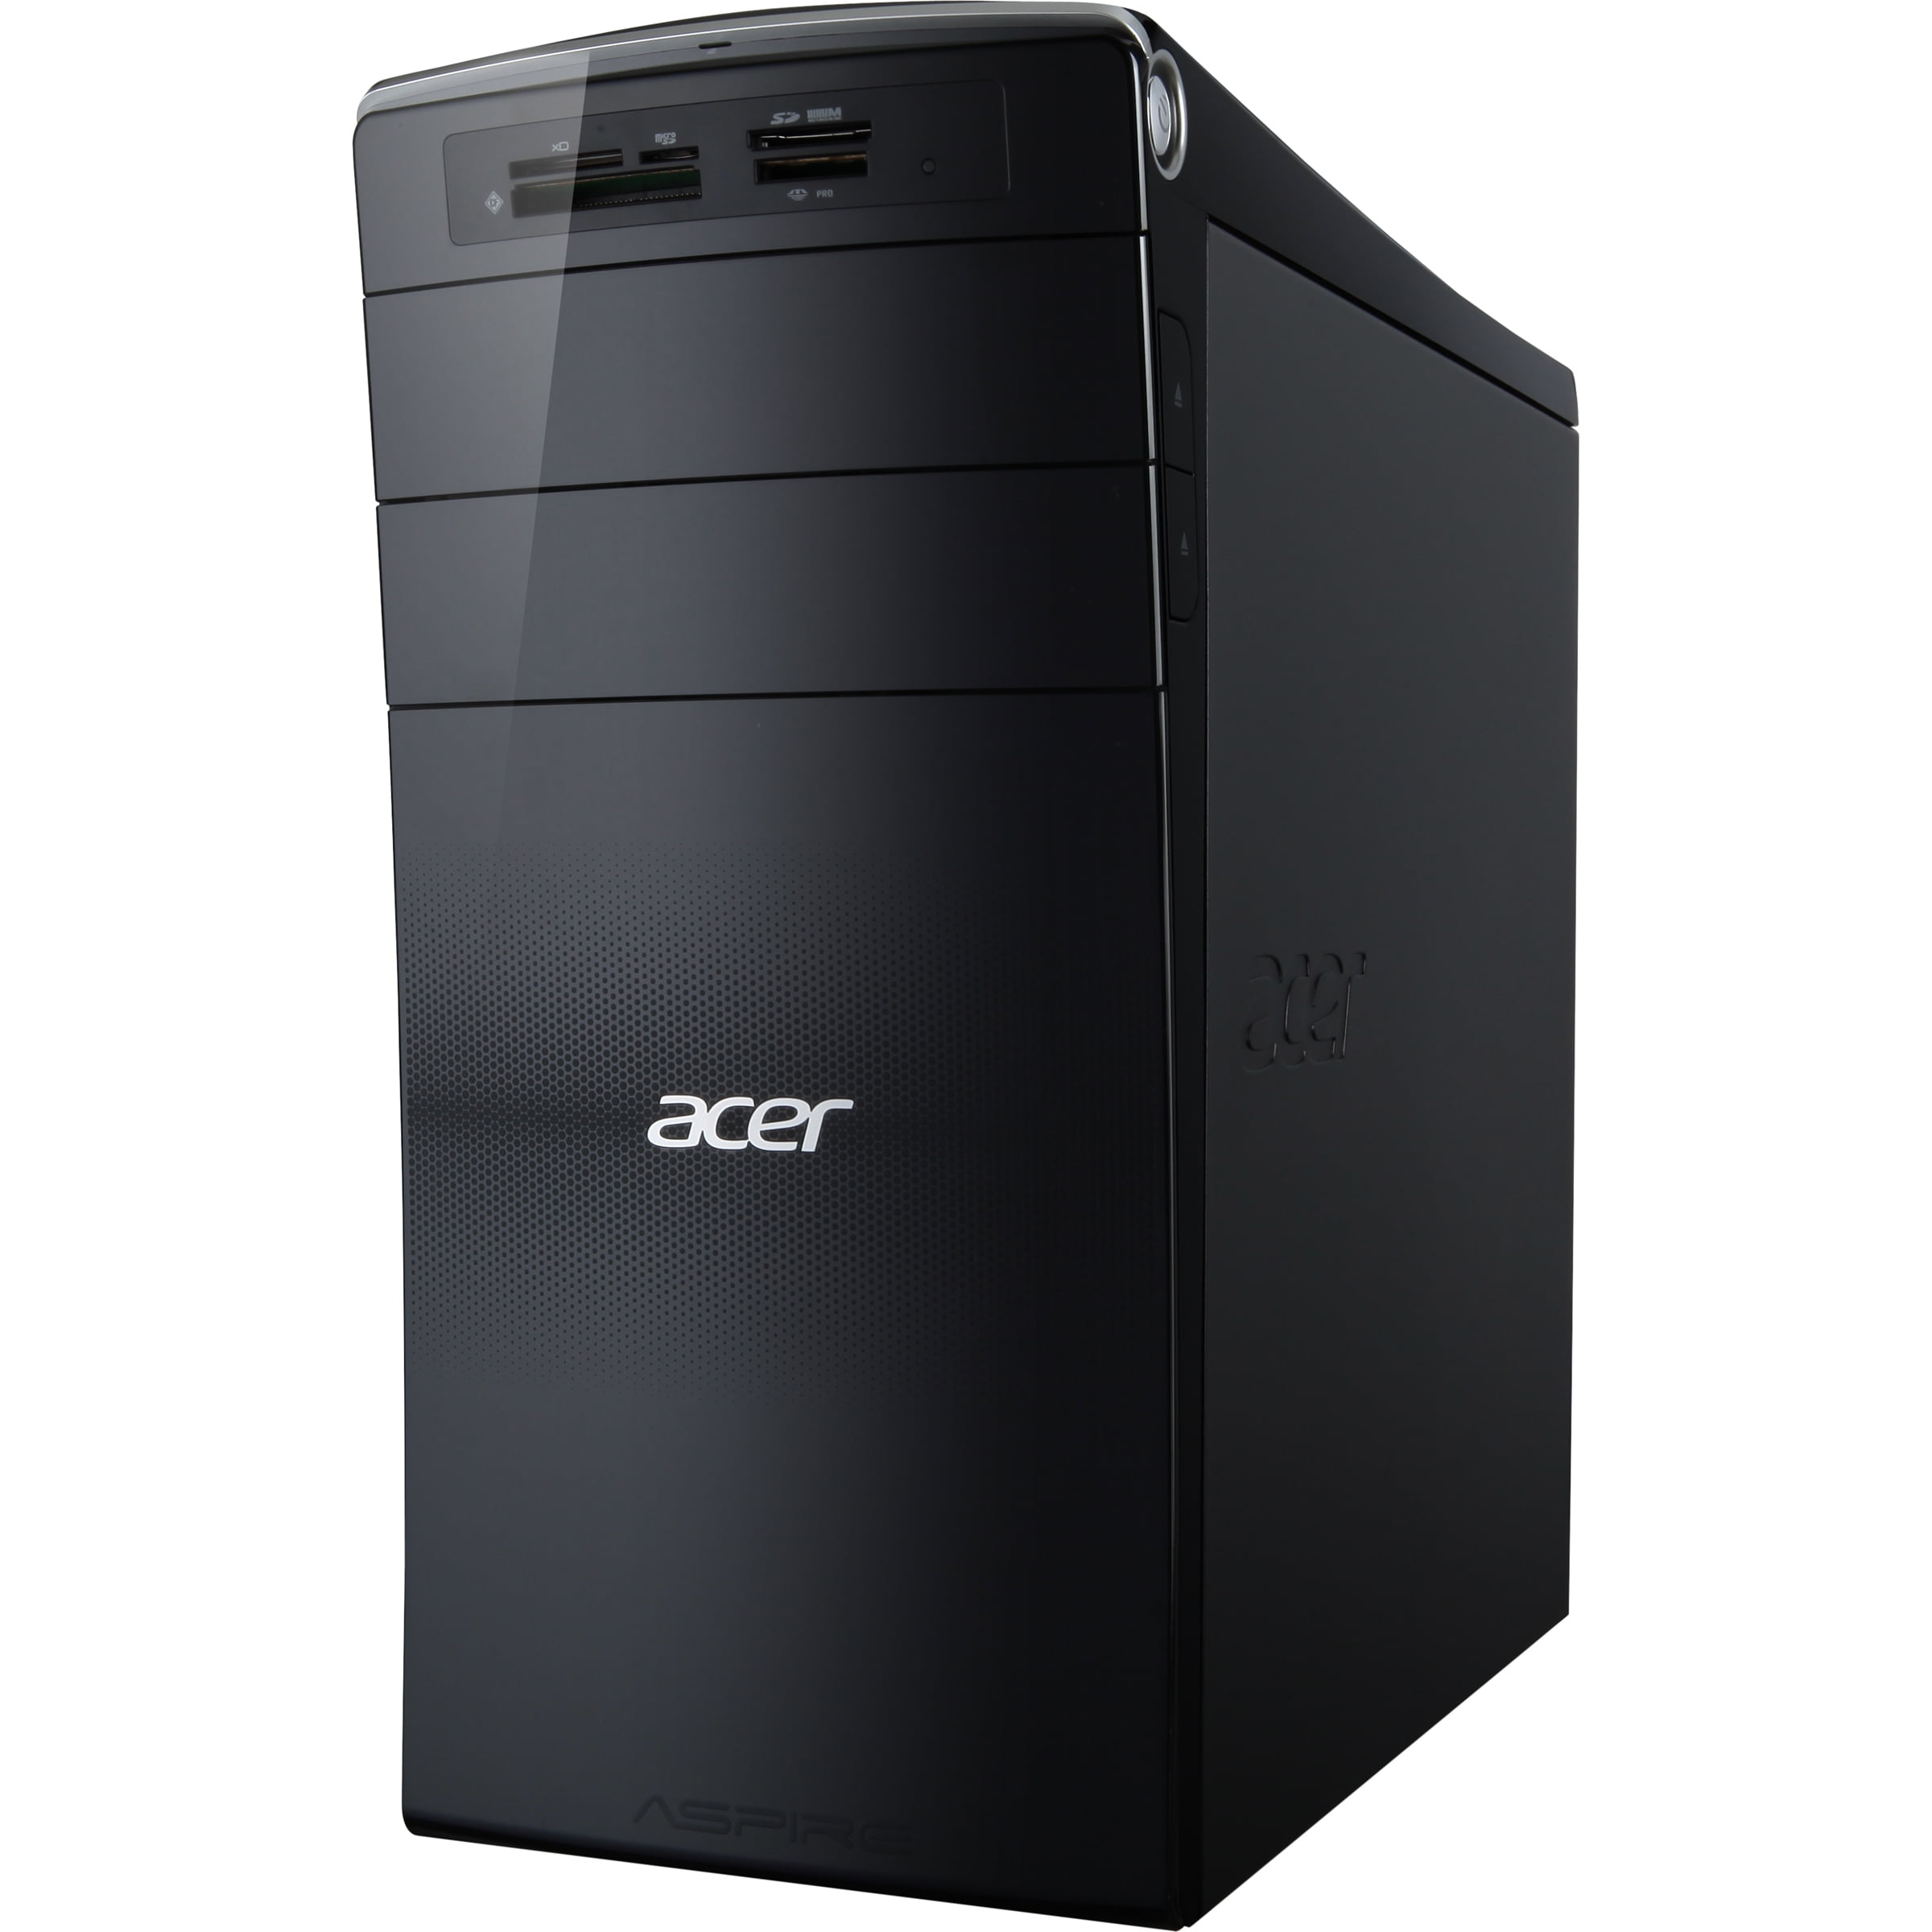 Acer Aspire M3470g Desktop Computer Amd A6 3620 Quad Core 220 Ghz 4